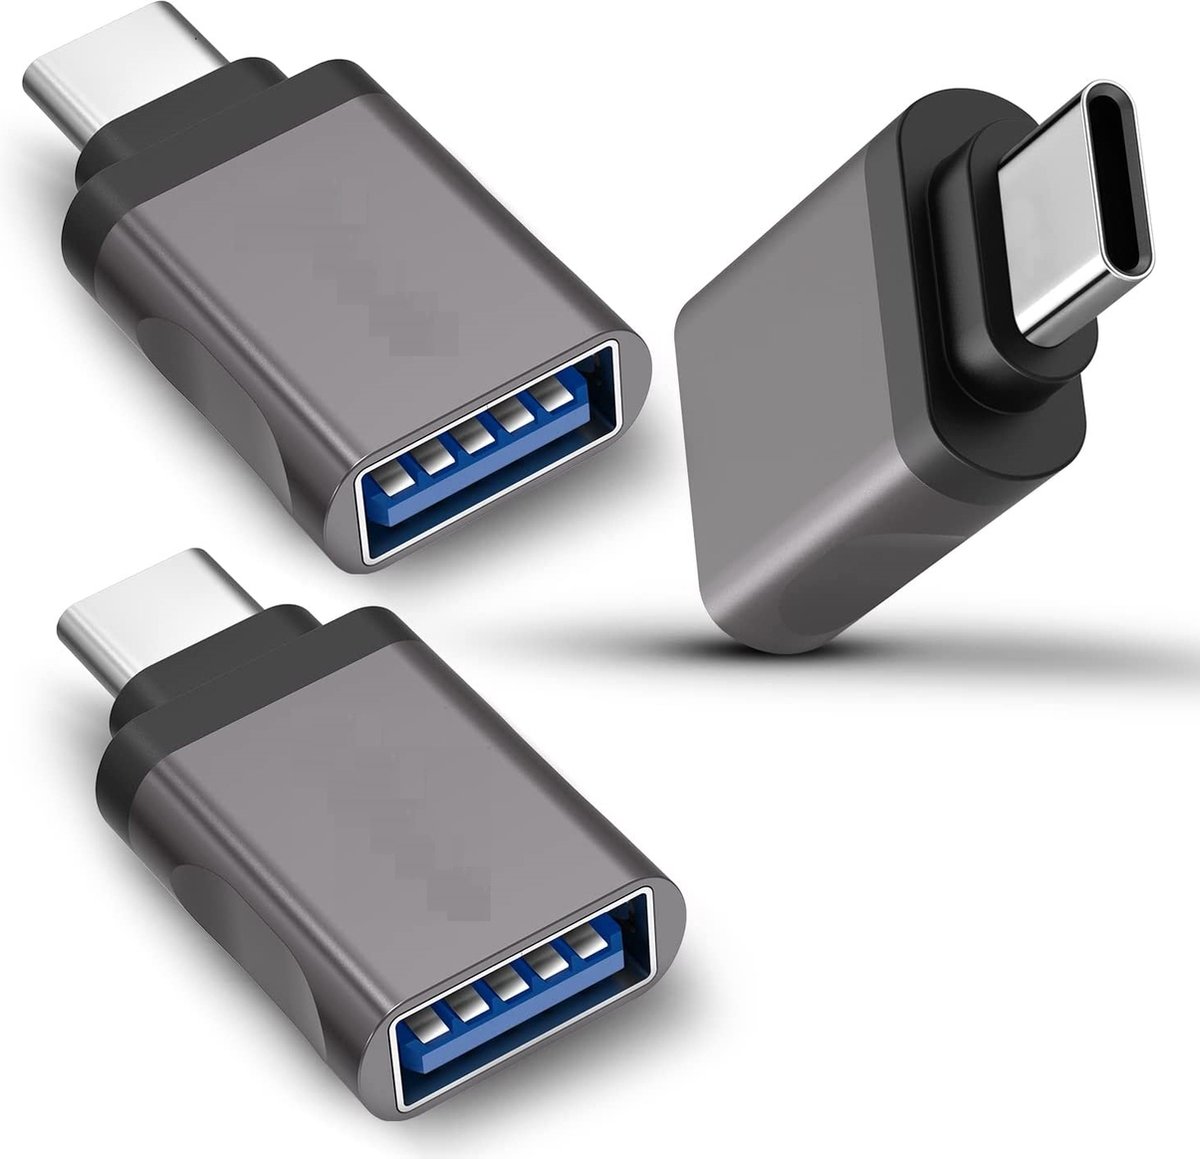 USB OTG Type C vers USB 3.0 adaptateur charge rapide données type